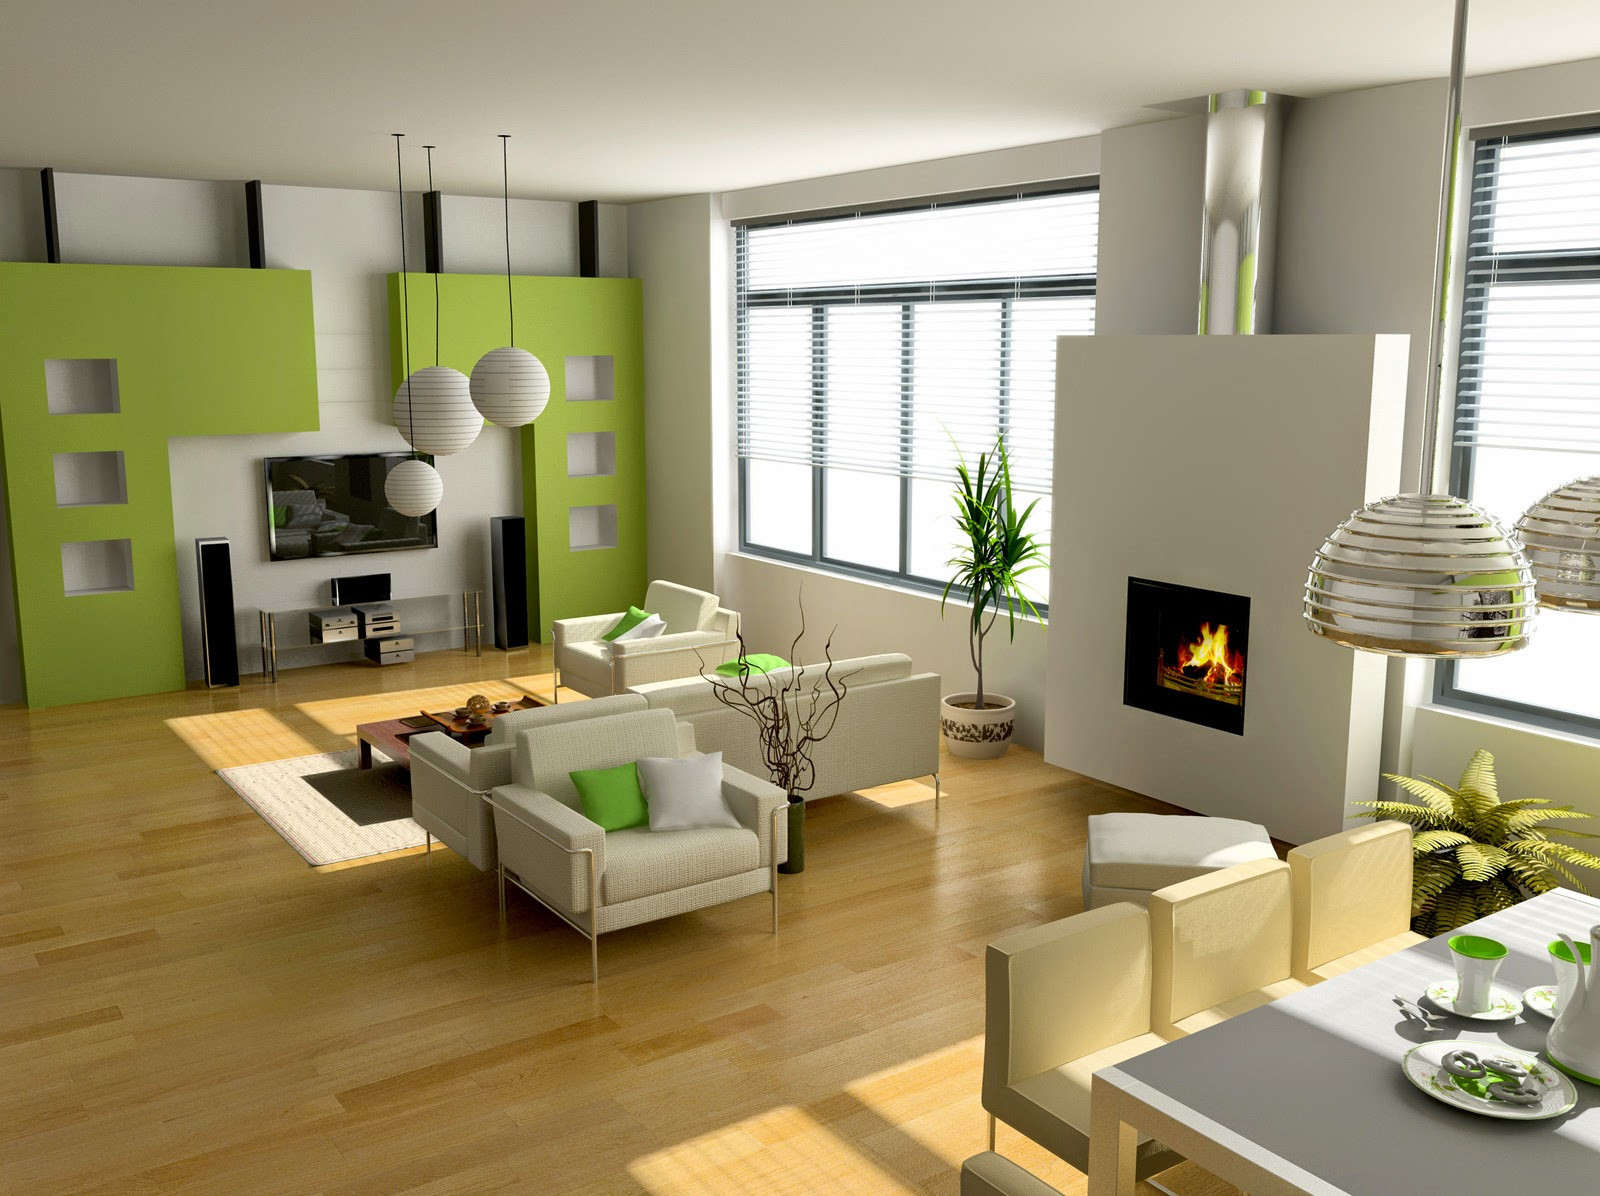 Contemporary Living Room Decor
 Home Interior Design How To Design A Modern Living Room